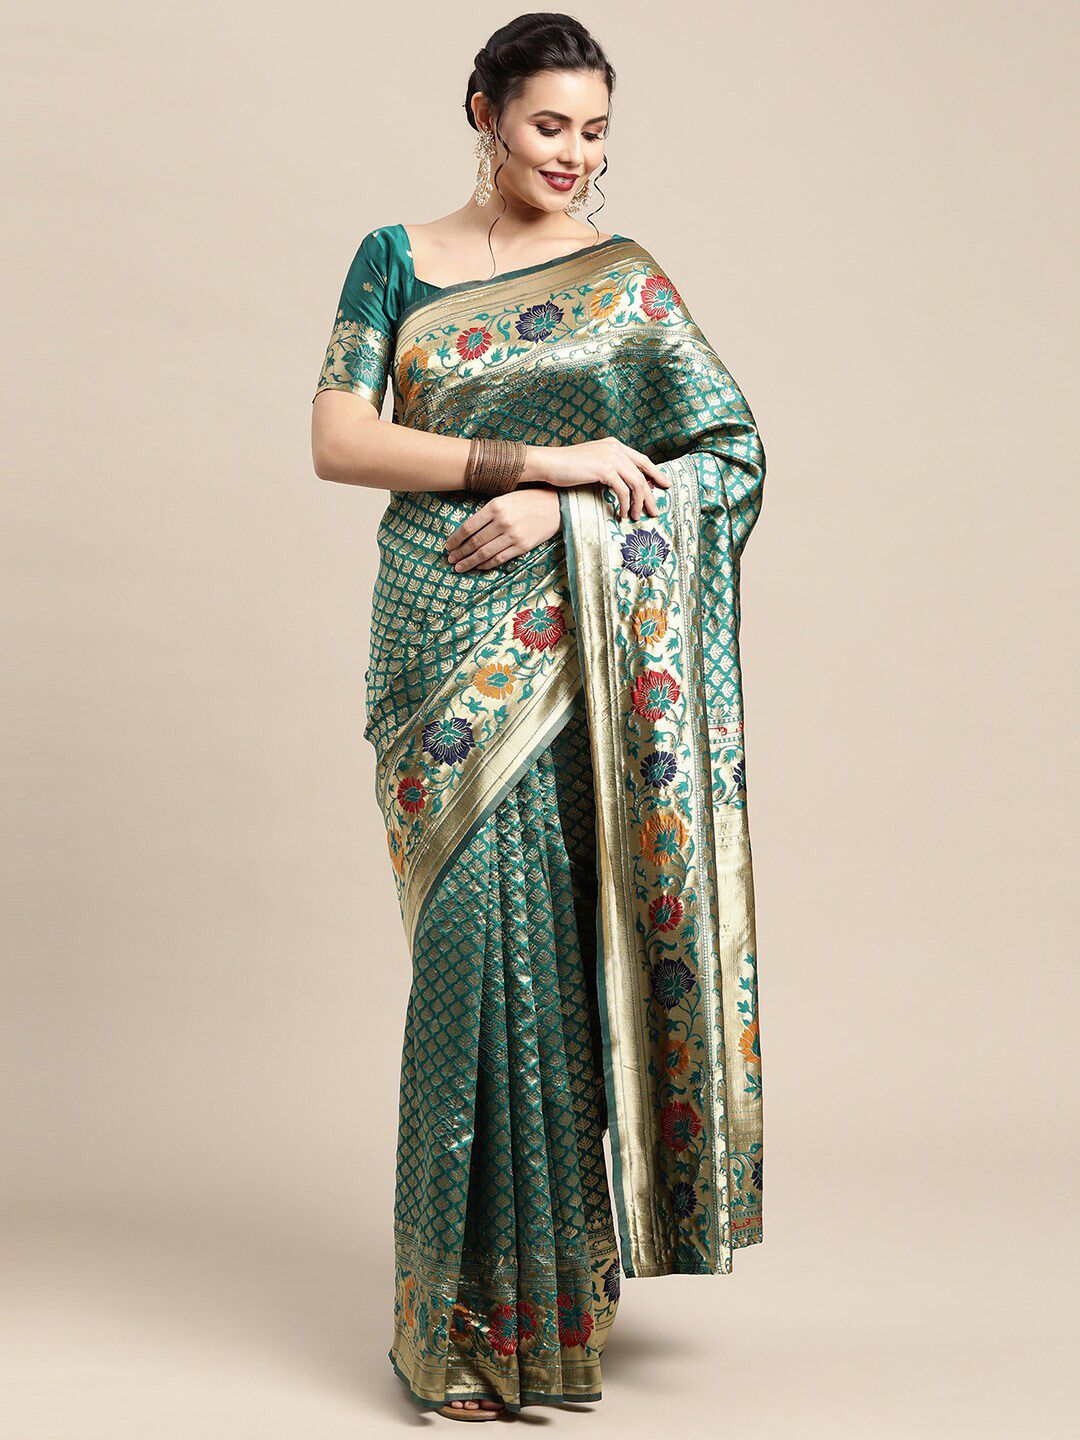 Saree mall Teal & Gold-Toned Woven Design Zari Silk Blend Kanjeevaram Sarees Price in India